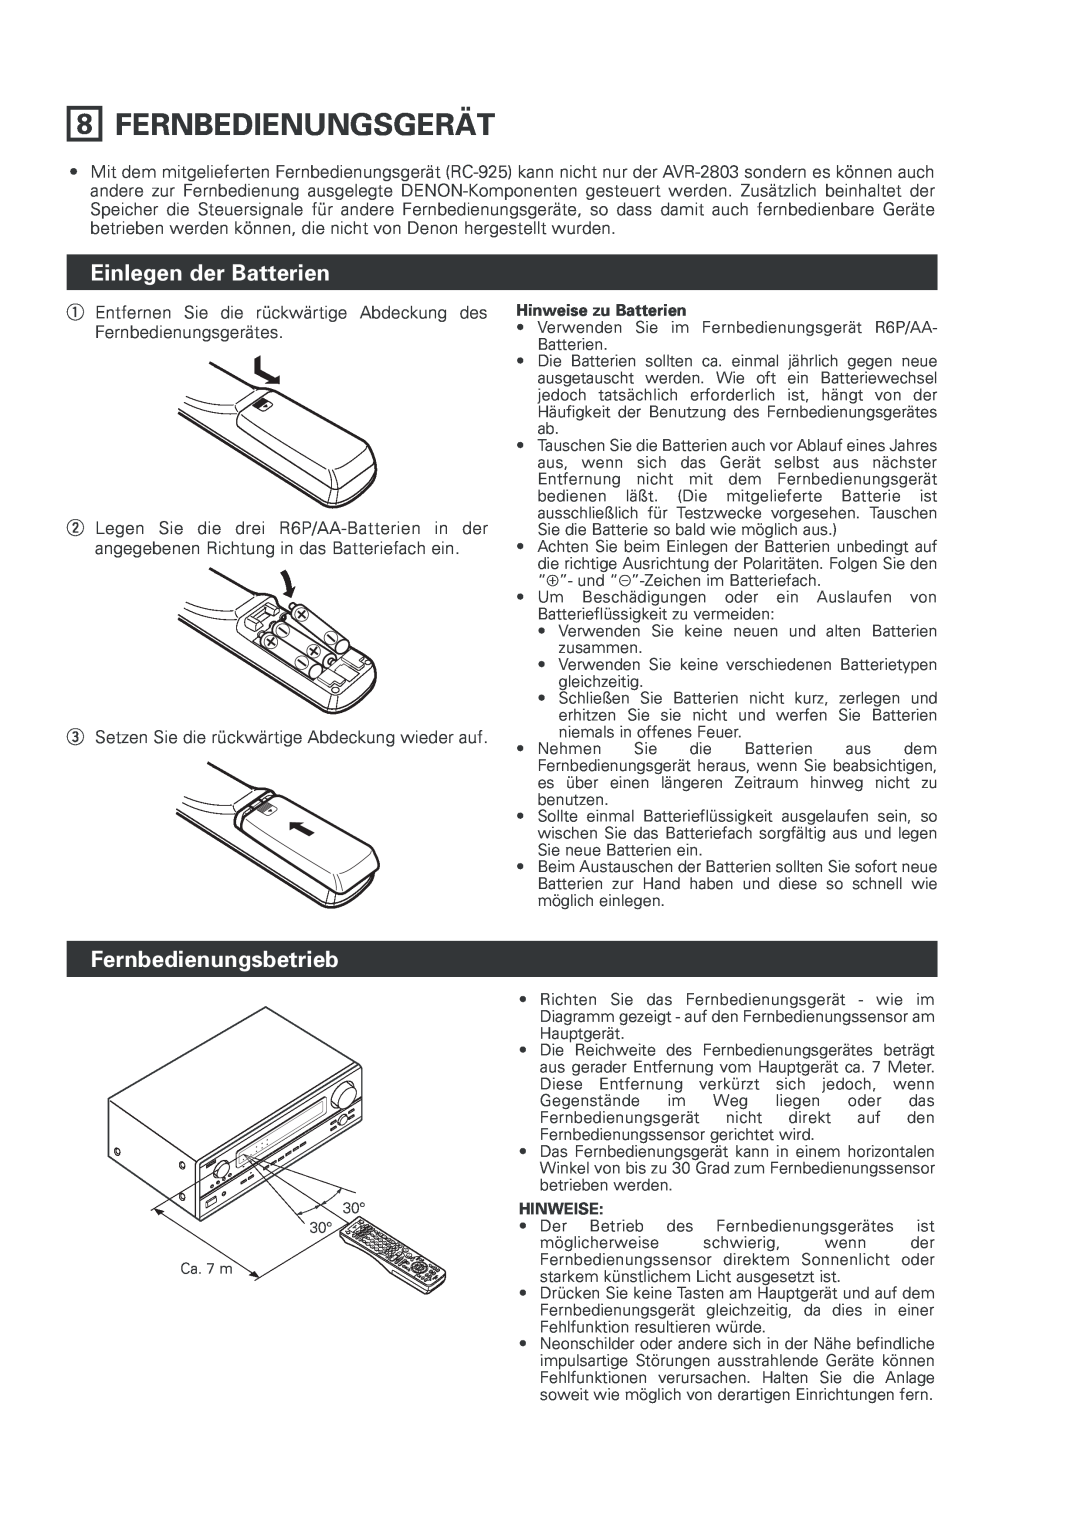 Denon AVR-2803 manual Fernbedienungsgerät, Einlegen der Batterien, Fernbedienungsbetrieb, Hinweise zu Batterien 